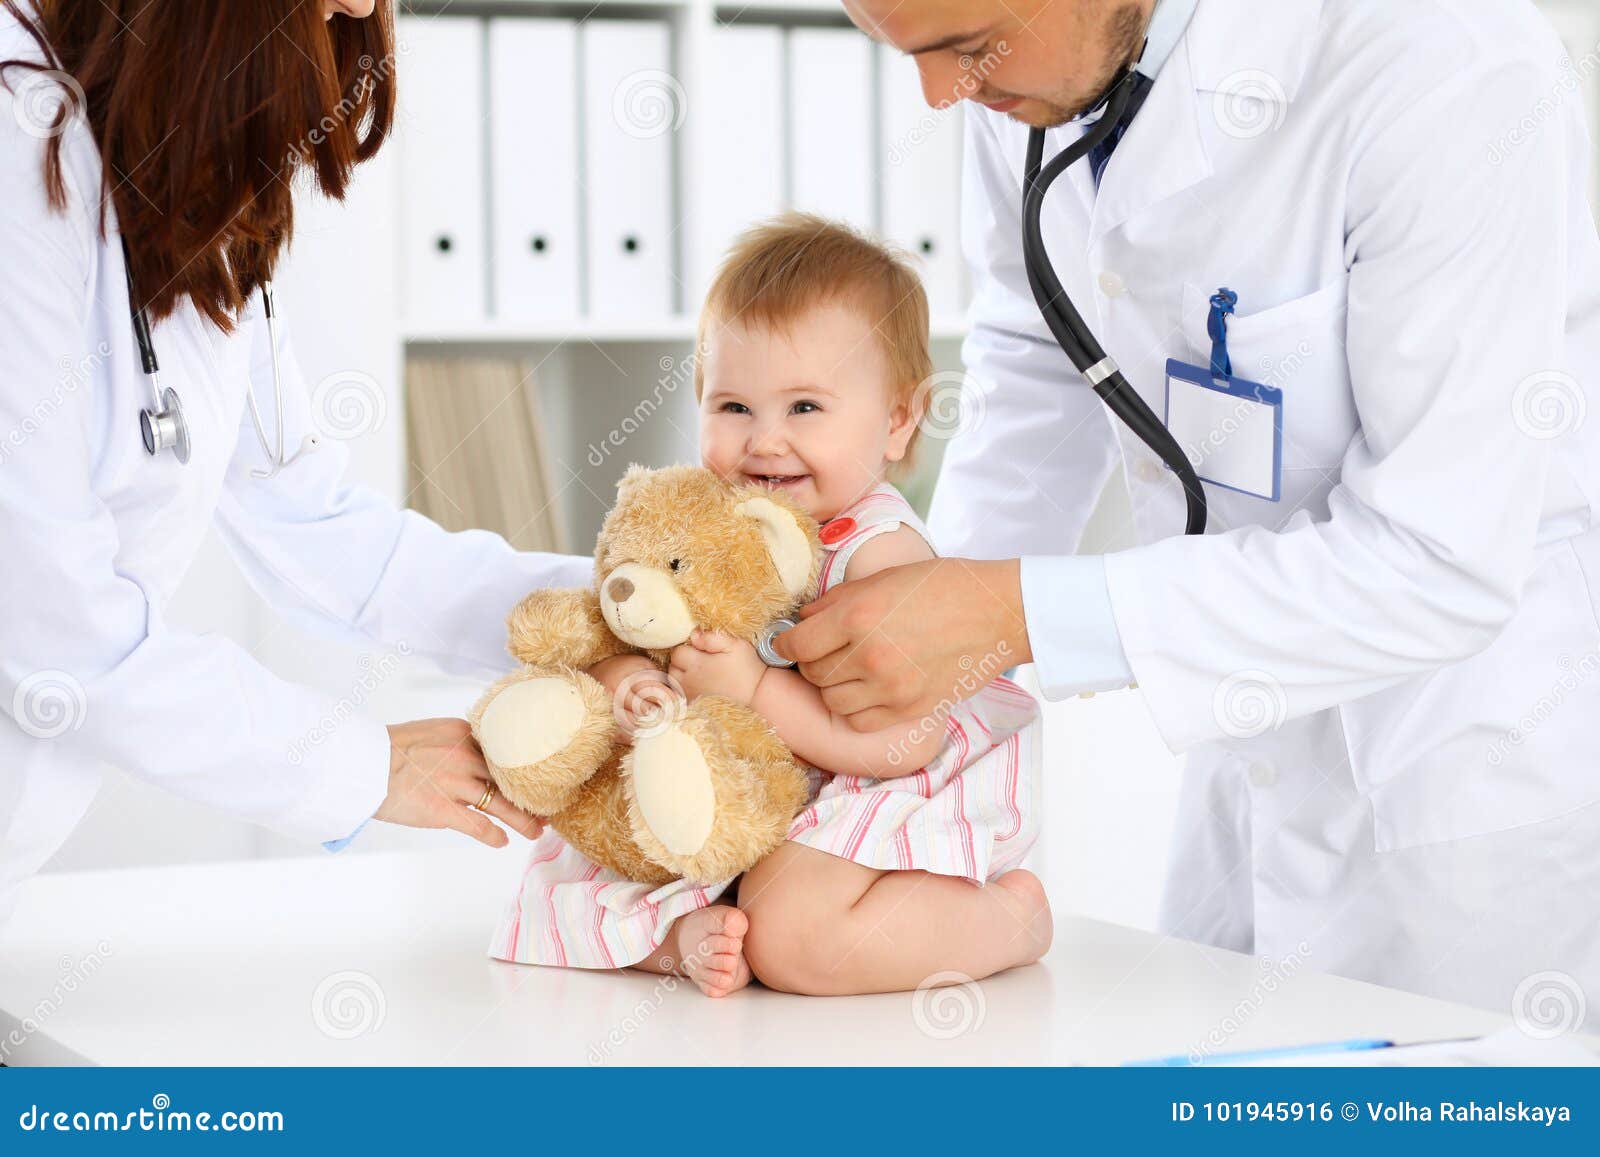 Pediatra examinando bebé con estetoscopio en el hospital. Atención